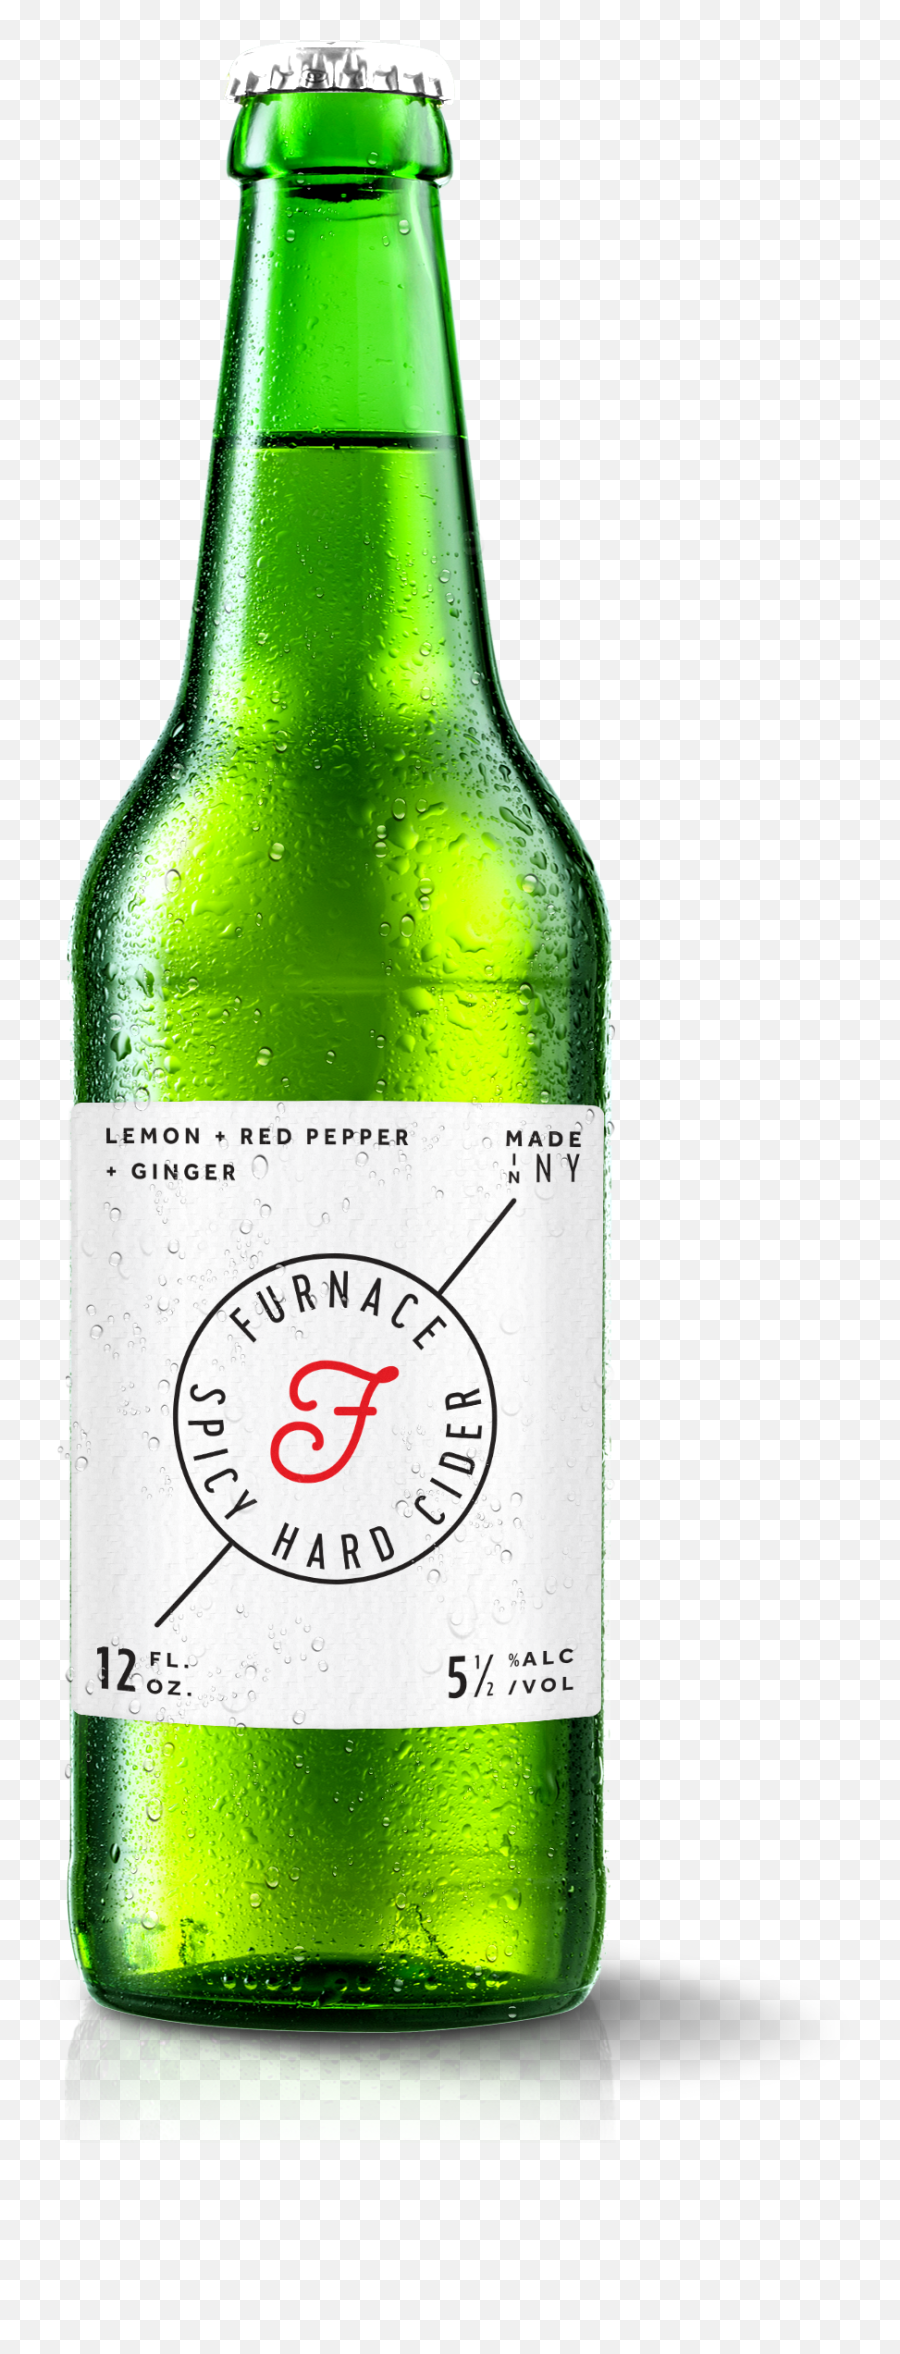 Download A Large Image Of Furnace Cider Bottle And - Bottle Solution Emoji,Beer Bottle Clipart